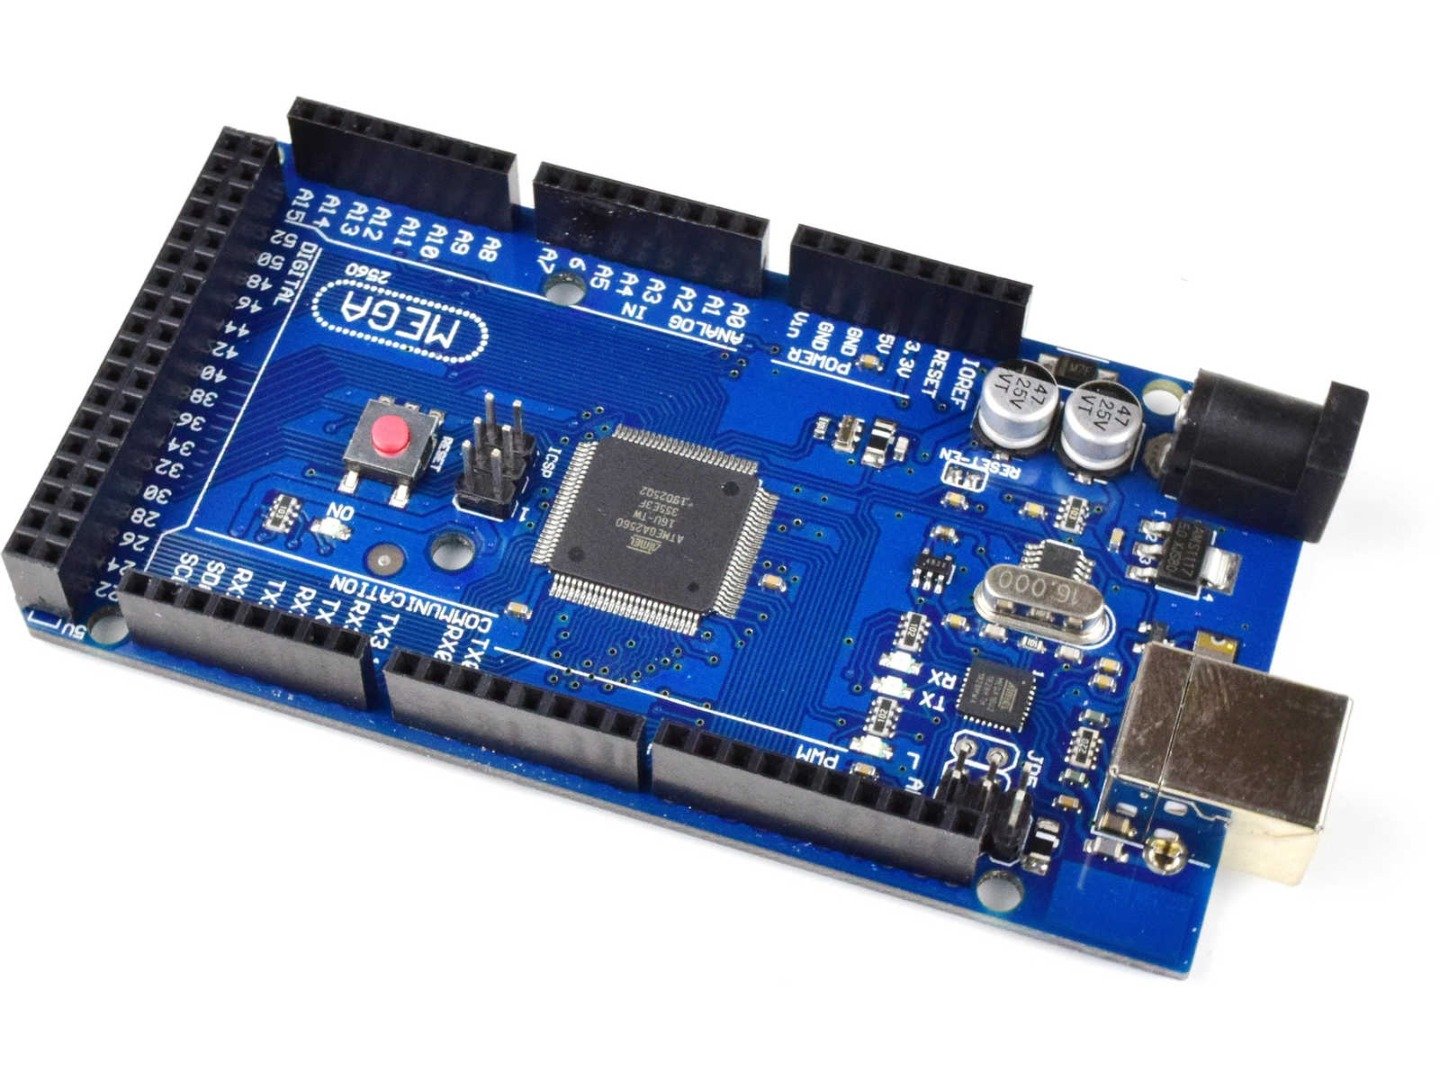 MEGA 2560 R3 module ATmega2560 + ATmega16u2 (100% compatible with Arduino) 4